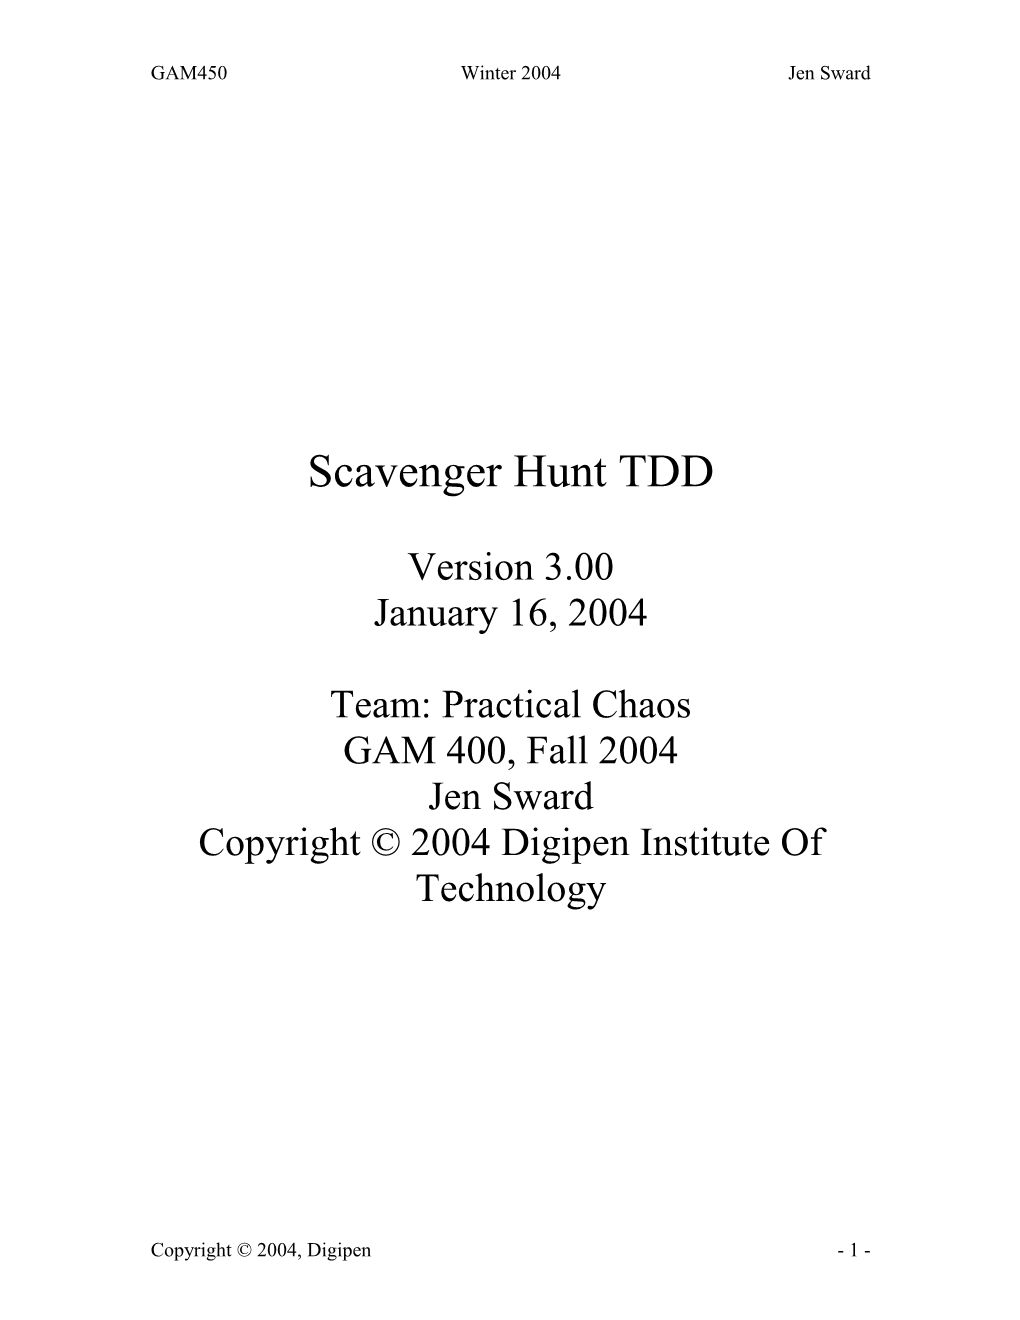 Scavenger Hunt TDD